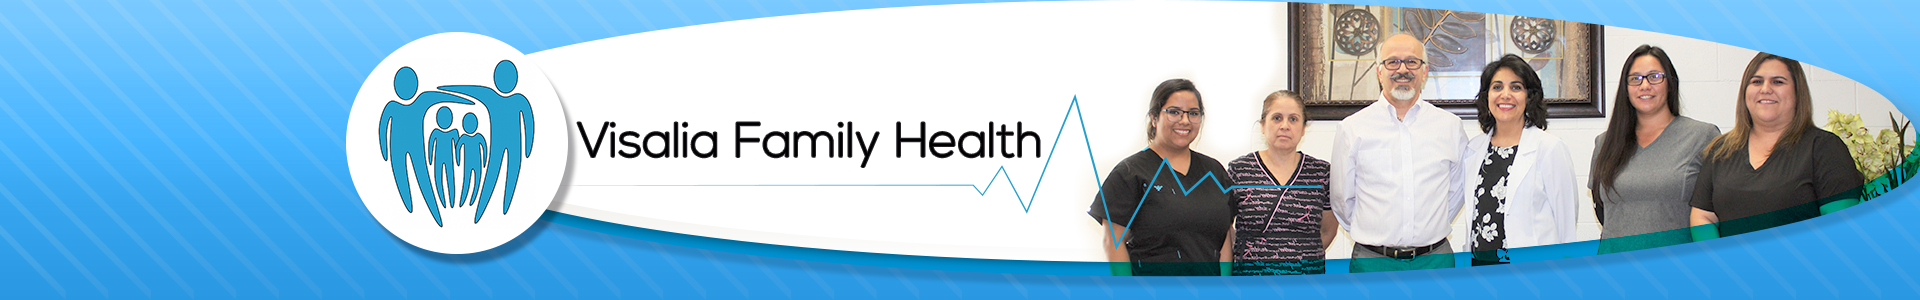 Visalia Family Health